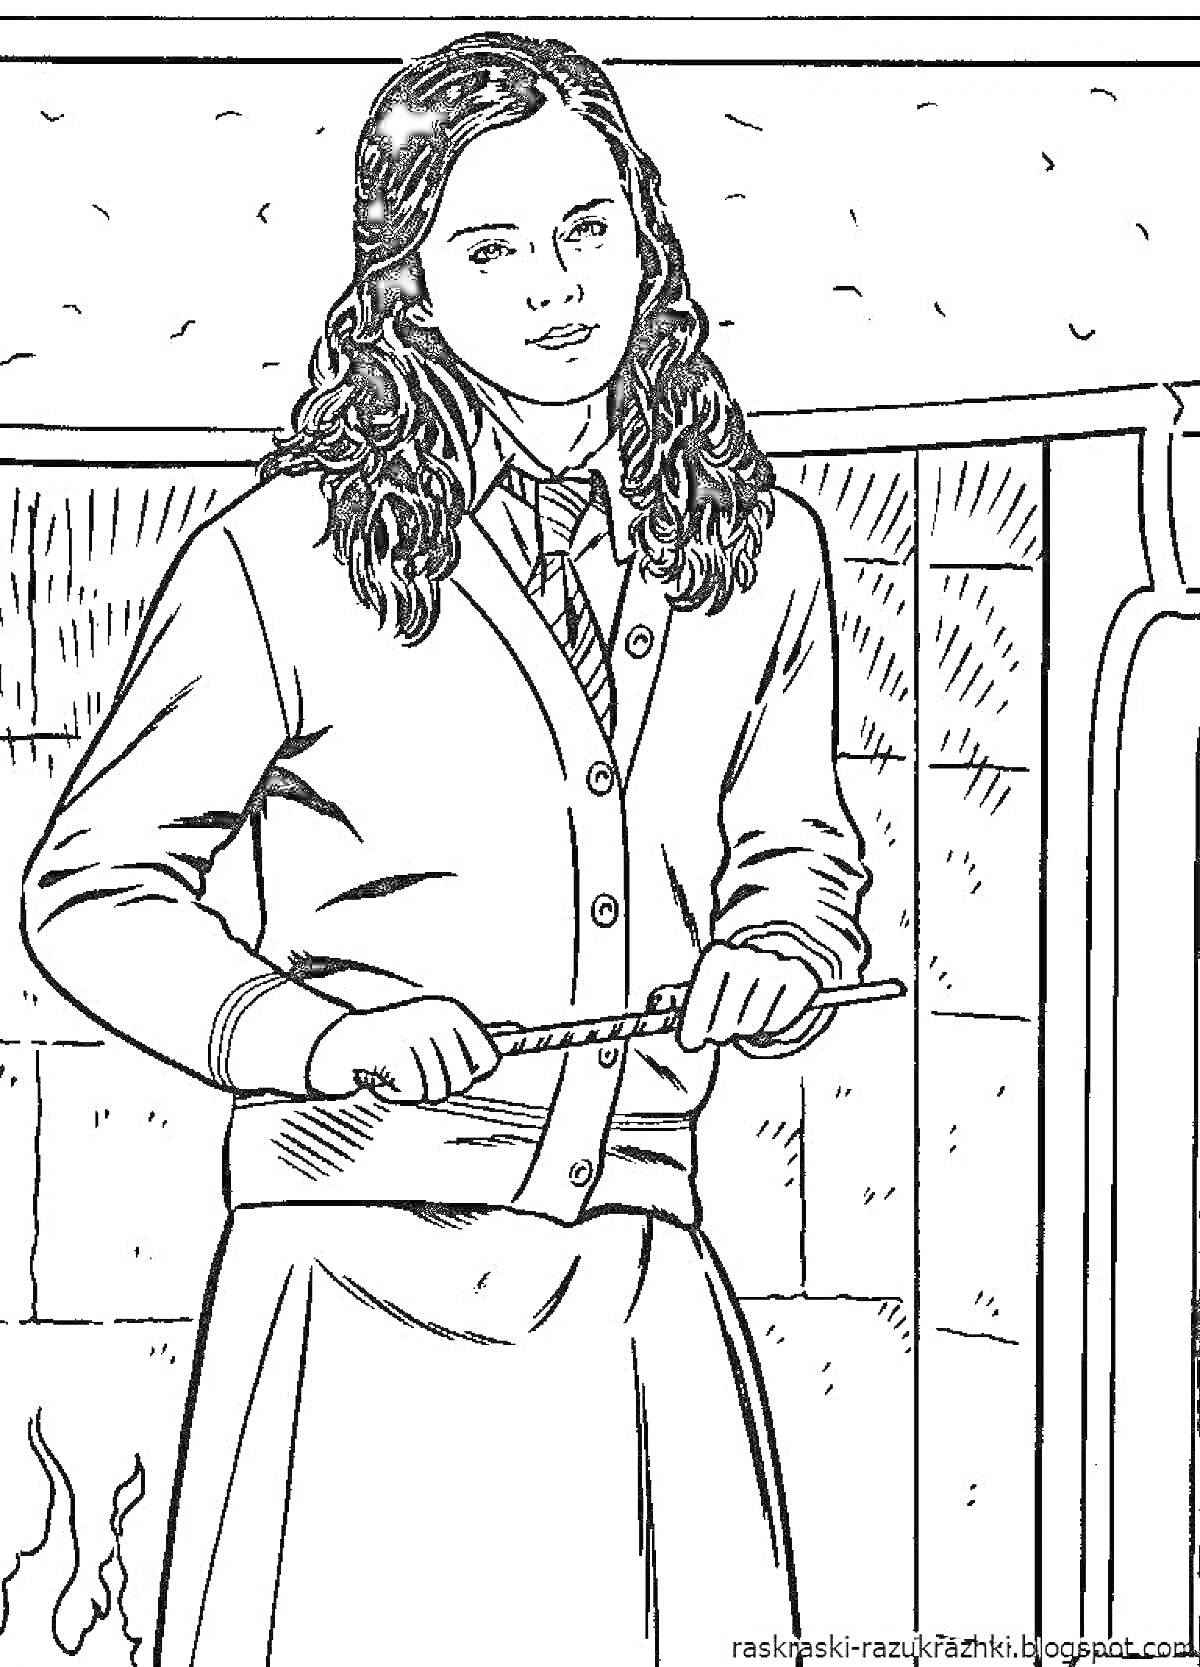 Девочка в школьной форме с длинными волосами, держащая волшебную палочку, стоит на фоне стены и камина